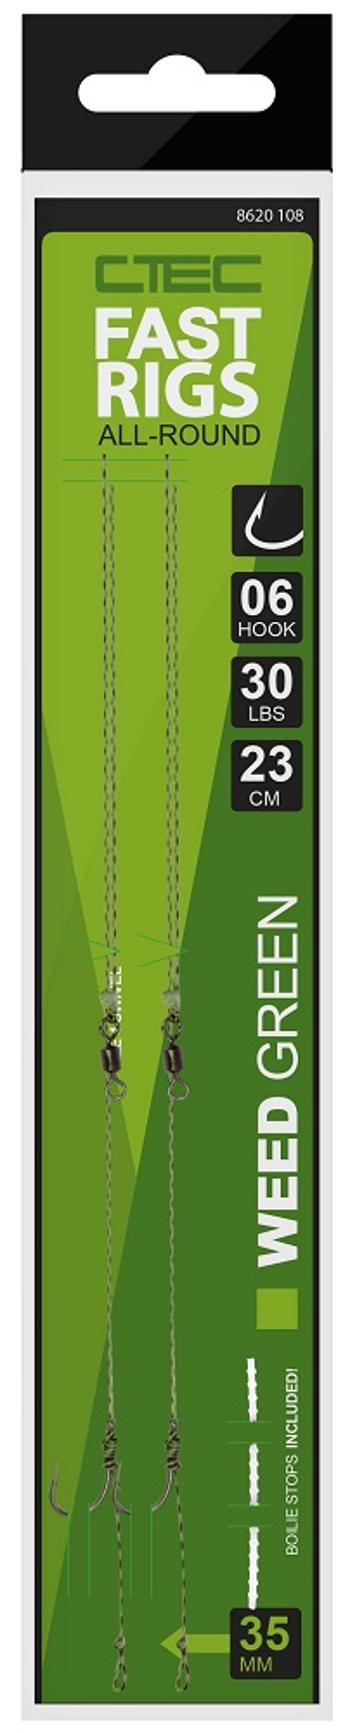 Spro návazec c tec fast rigs weedy zelená 23 cm 30 lb 2 ks-velikost háčku 10